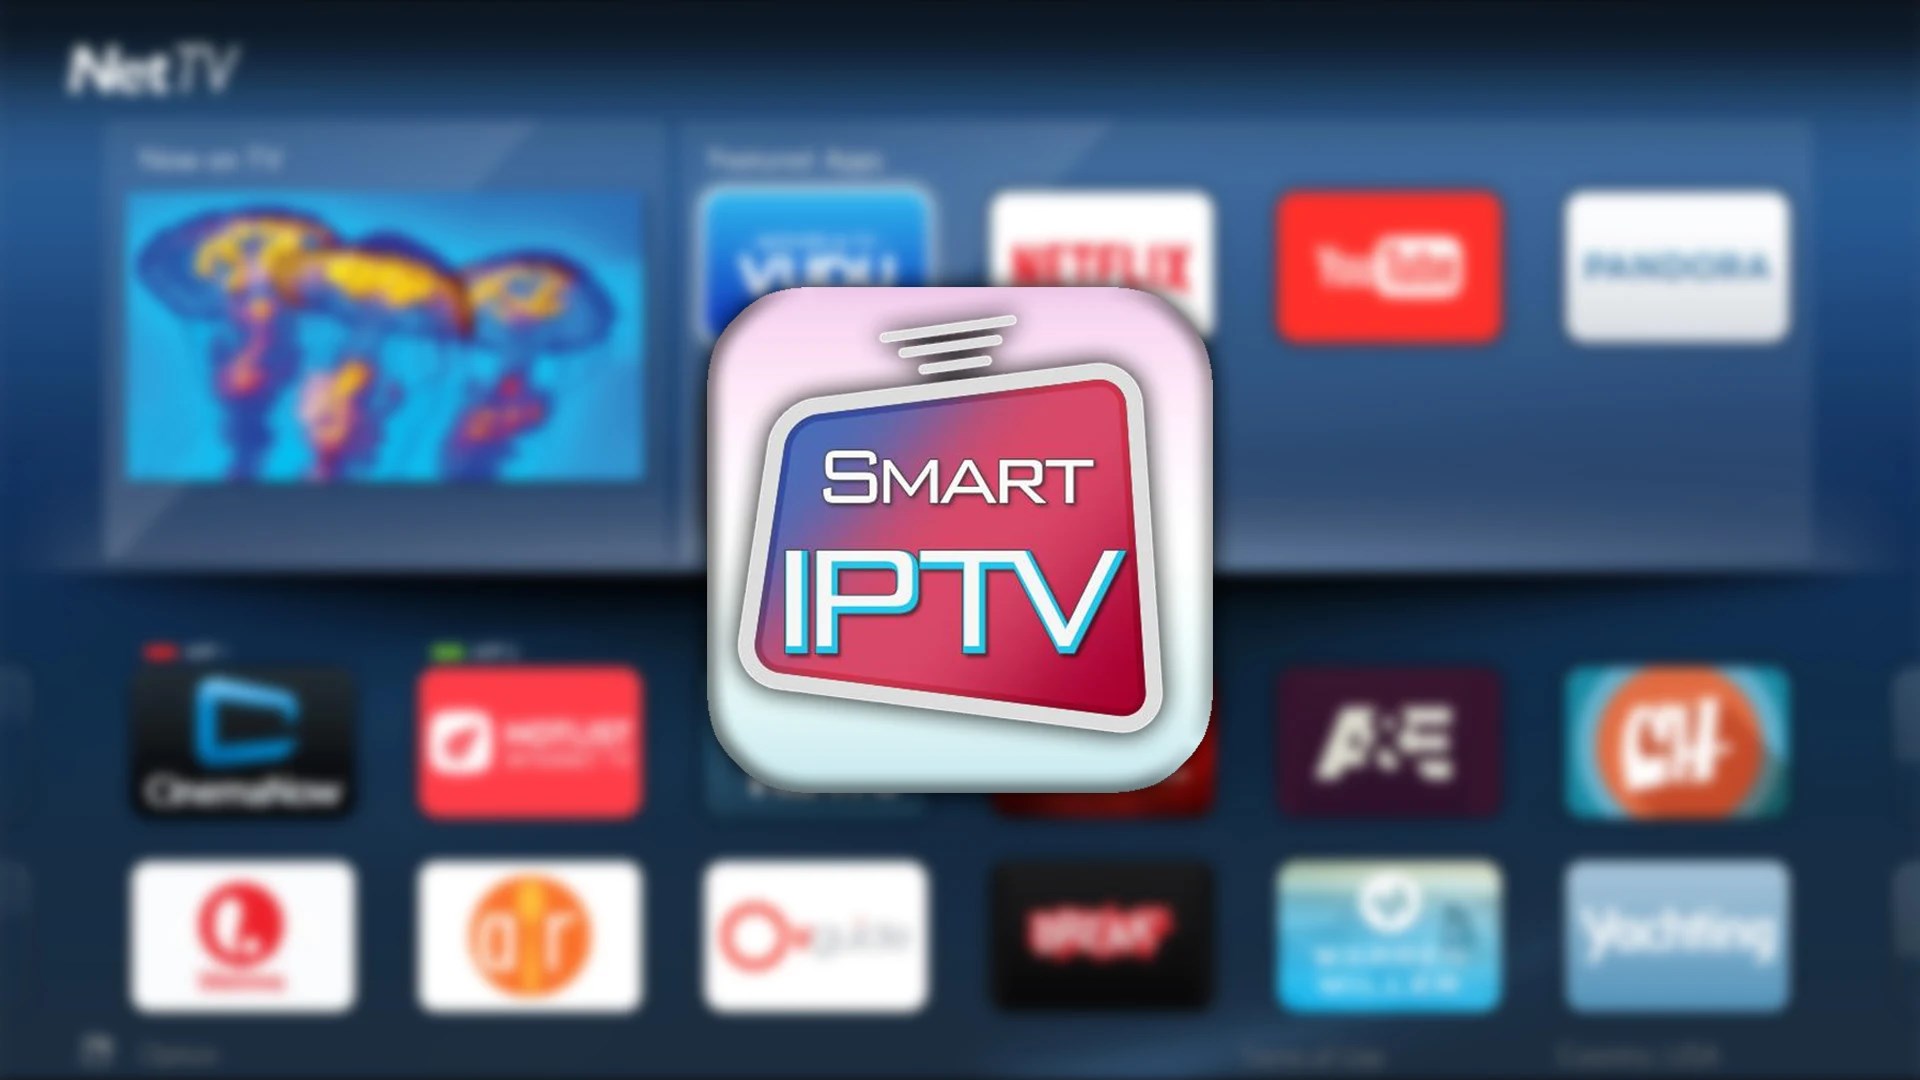 Smart IPTV